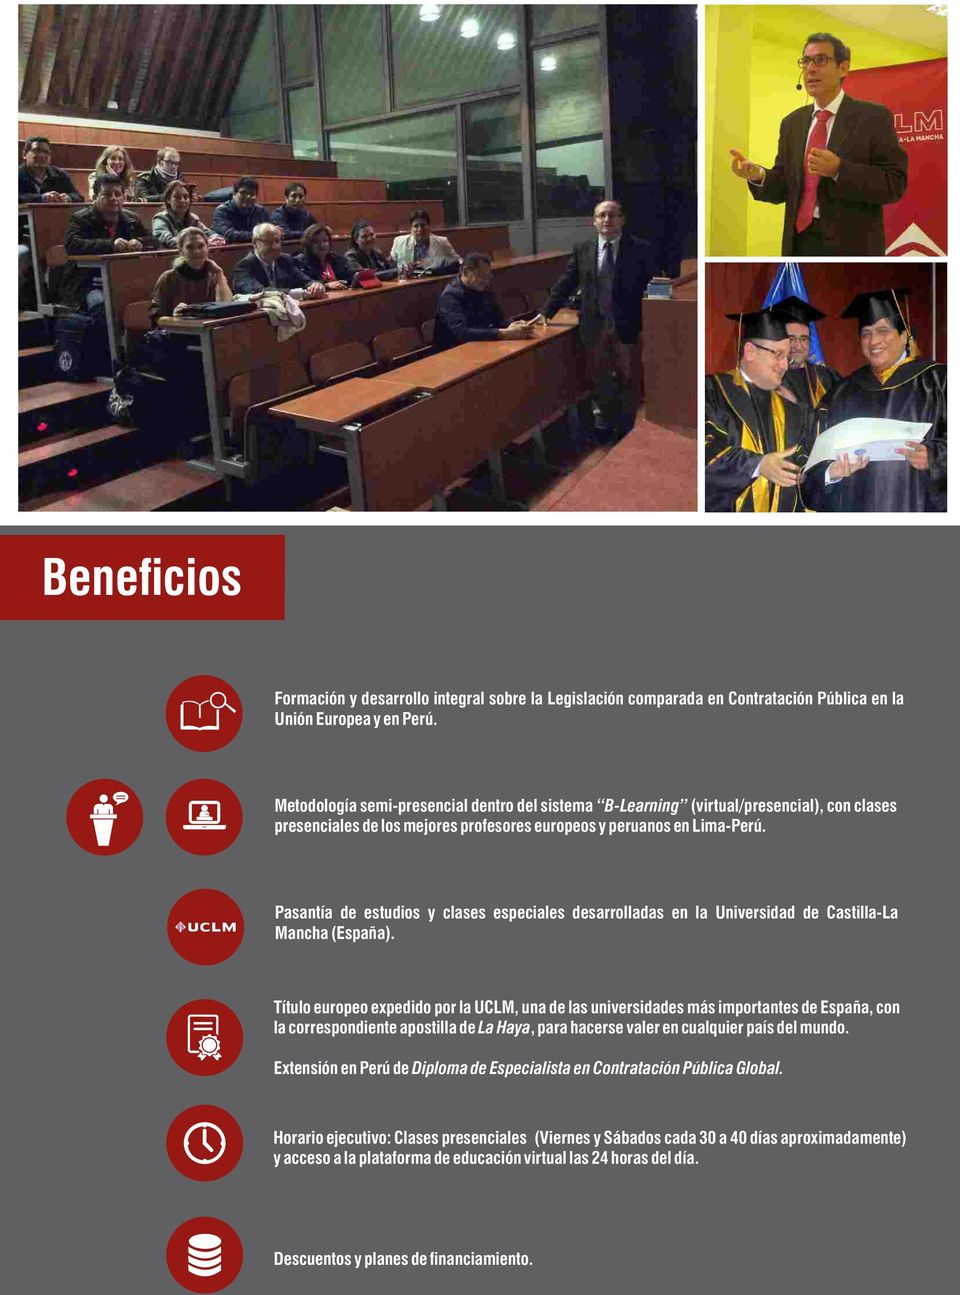 Pasantía de estudios y clases especiales desarrolladas en la Universidad de Castilla-La Mancha (España).